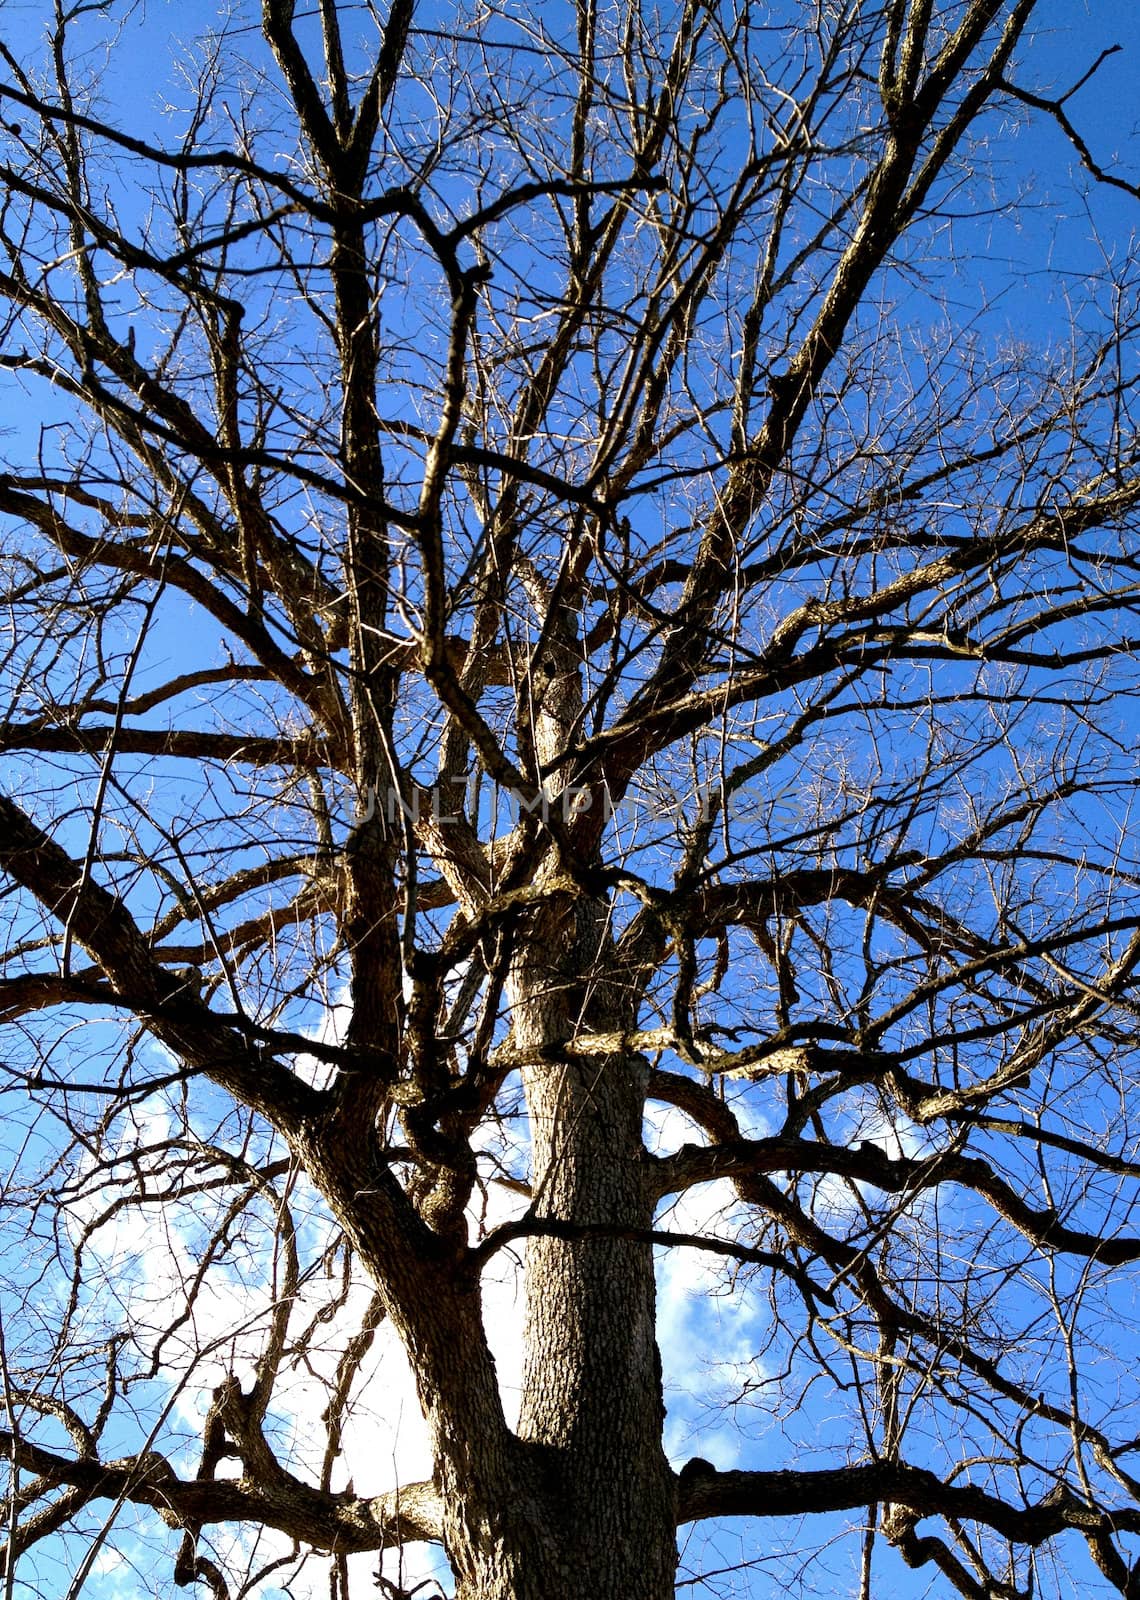 Winter Tree Against Sky by RefocusPhoto